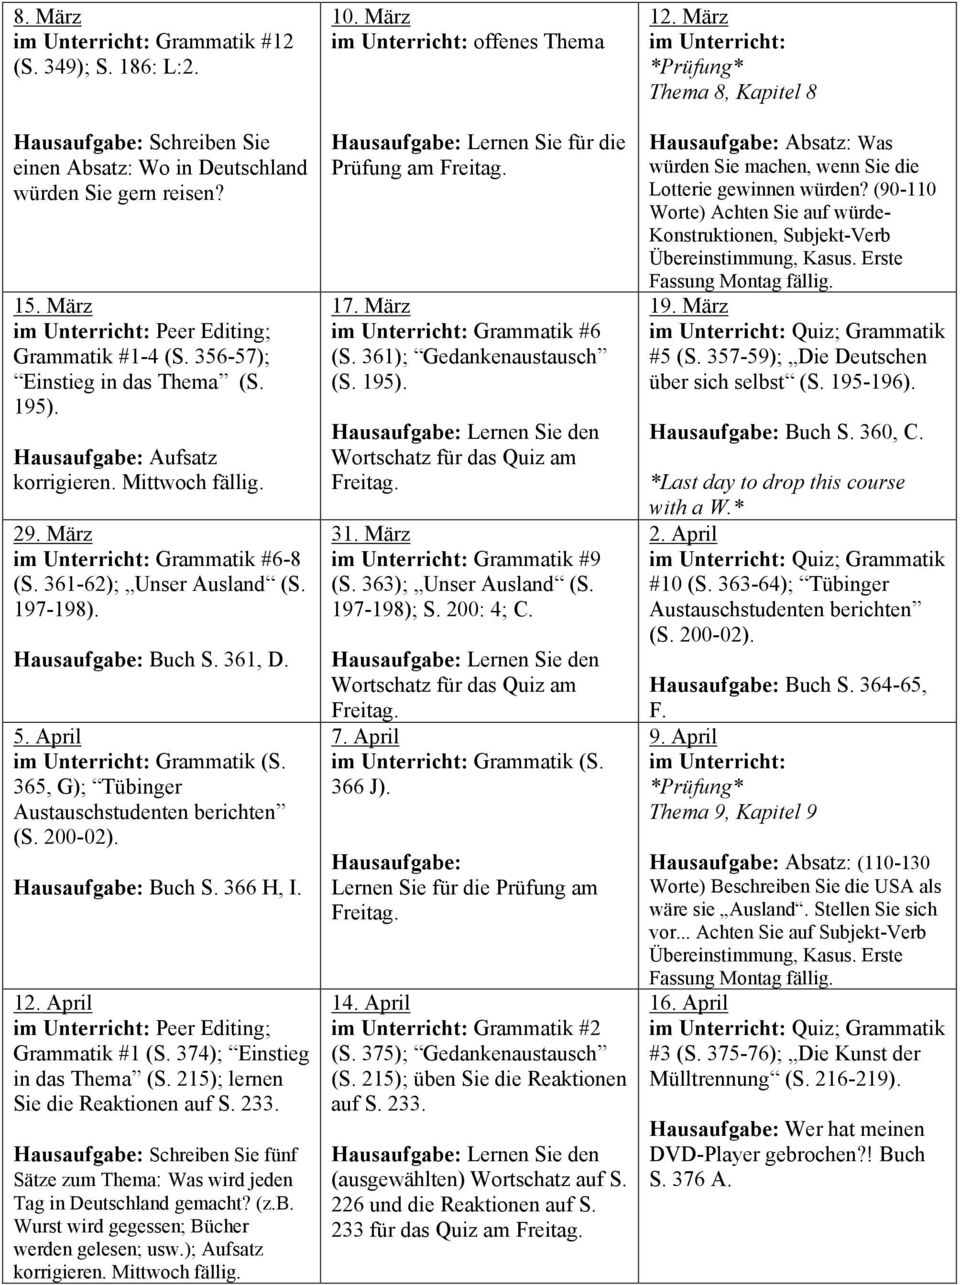 April Grammatik (S. 365, G); Tübinger Austauschstudenten berichten (S. 200-02). Hausaufgabe: Buch S. 366 H, I. 12. April Peer Editing; Grammatik #1 (S. 374); Einstieg in das Thema (S.